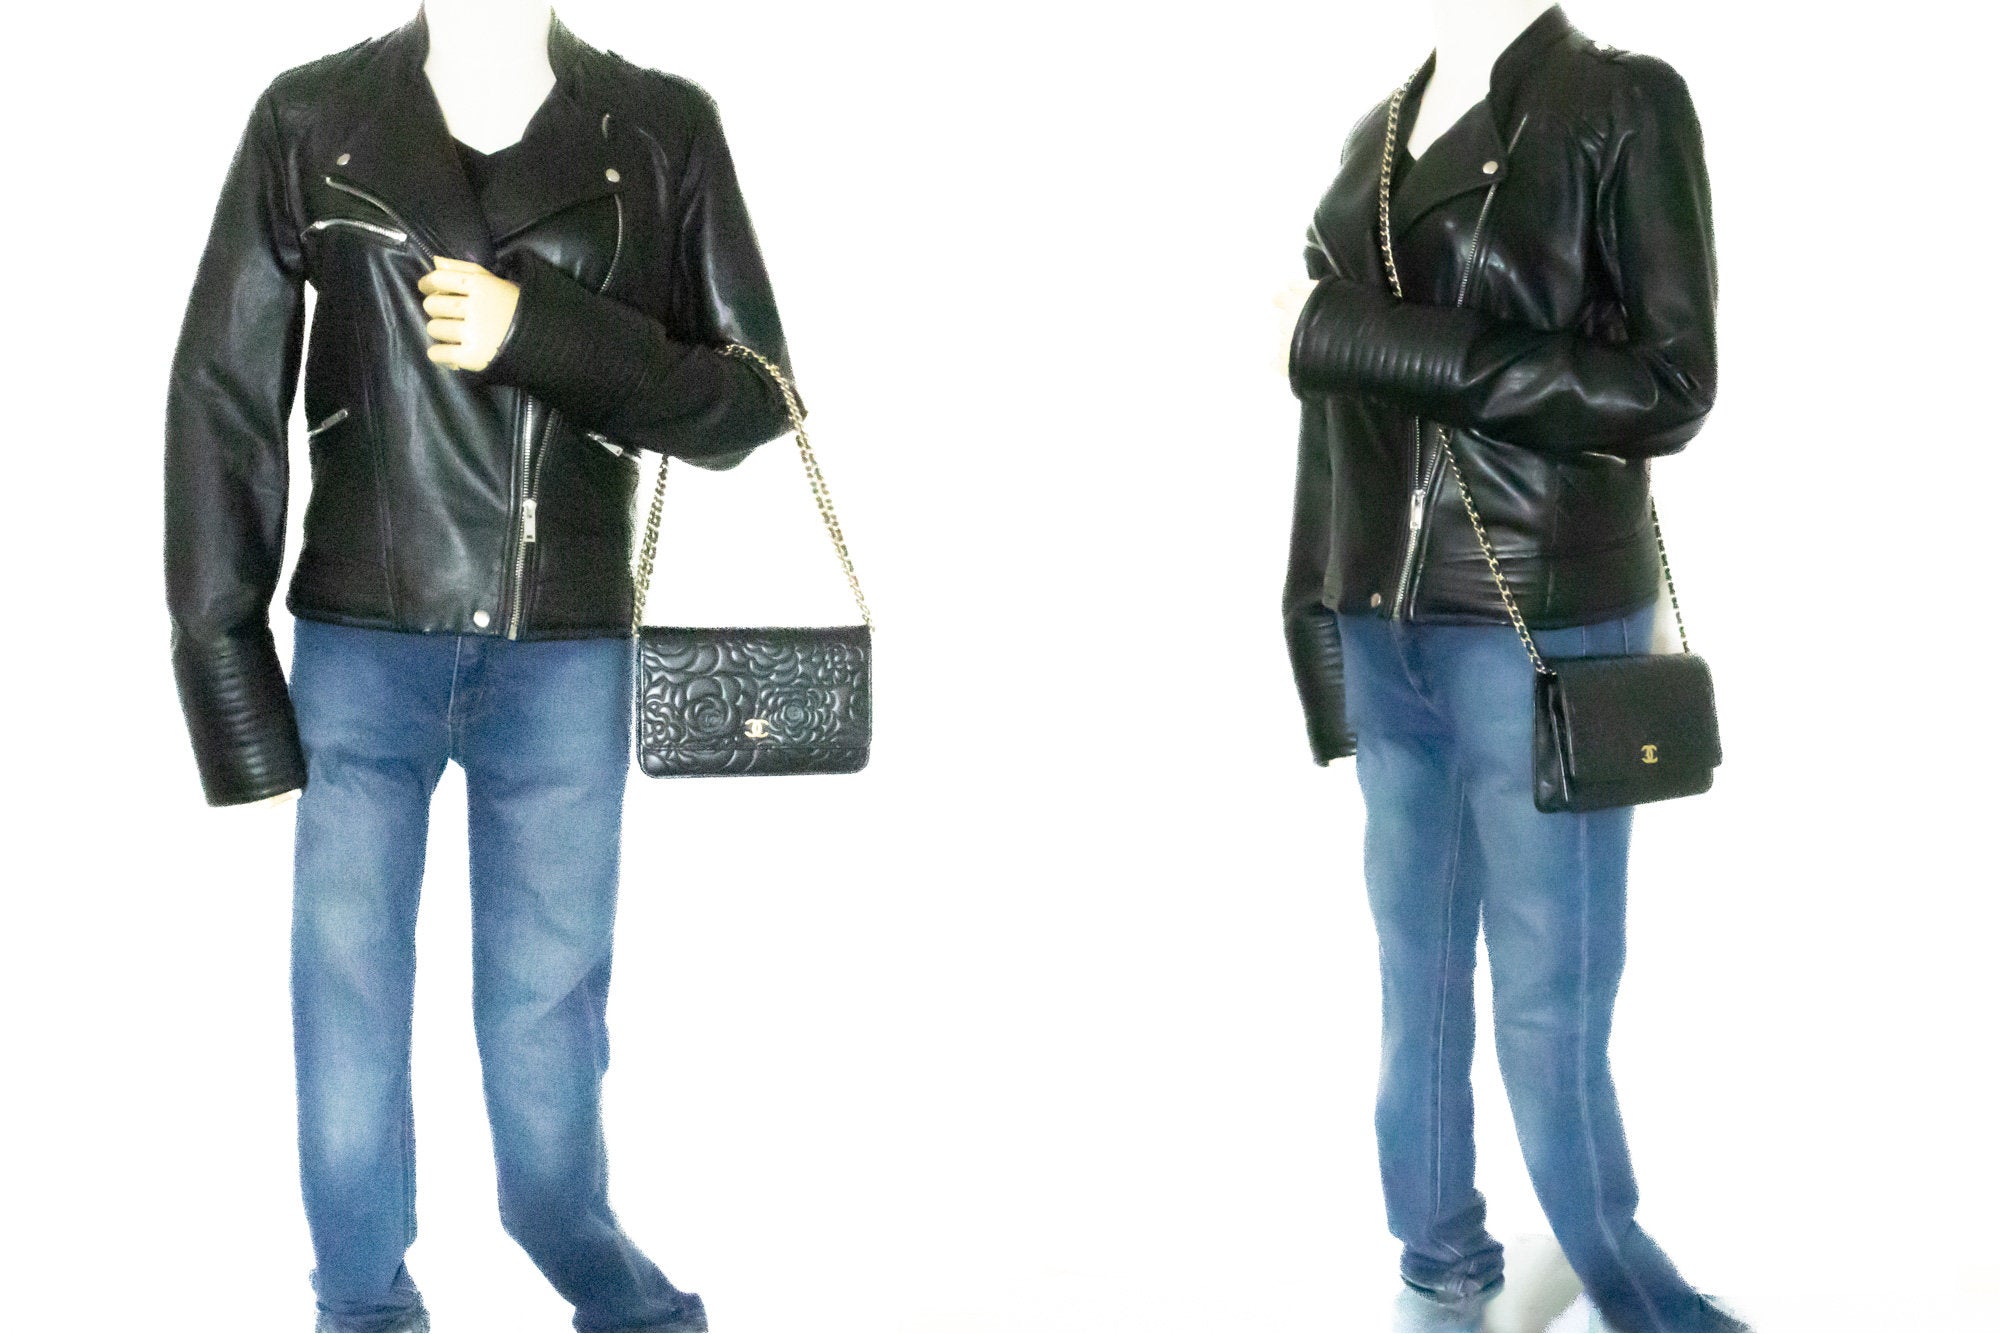 CHANEL Black Camellia Embossed Wallet On Chain WOC Shoulder Bag